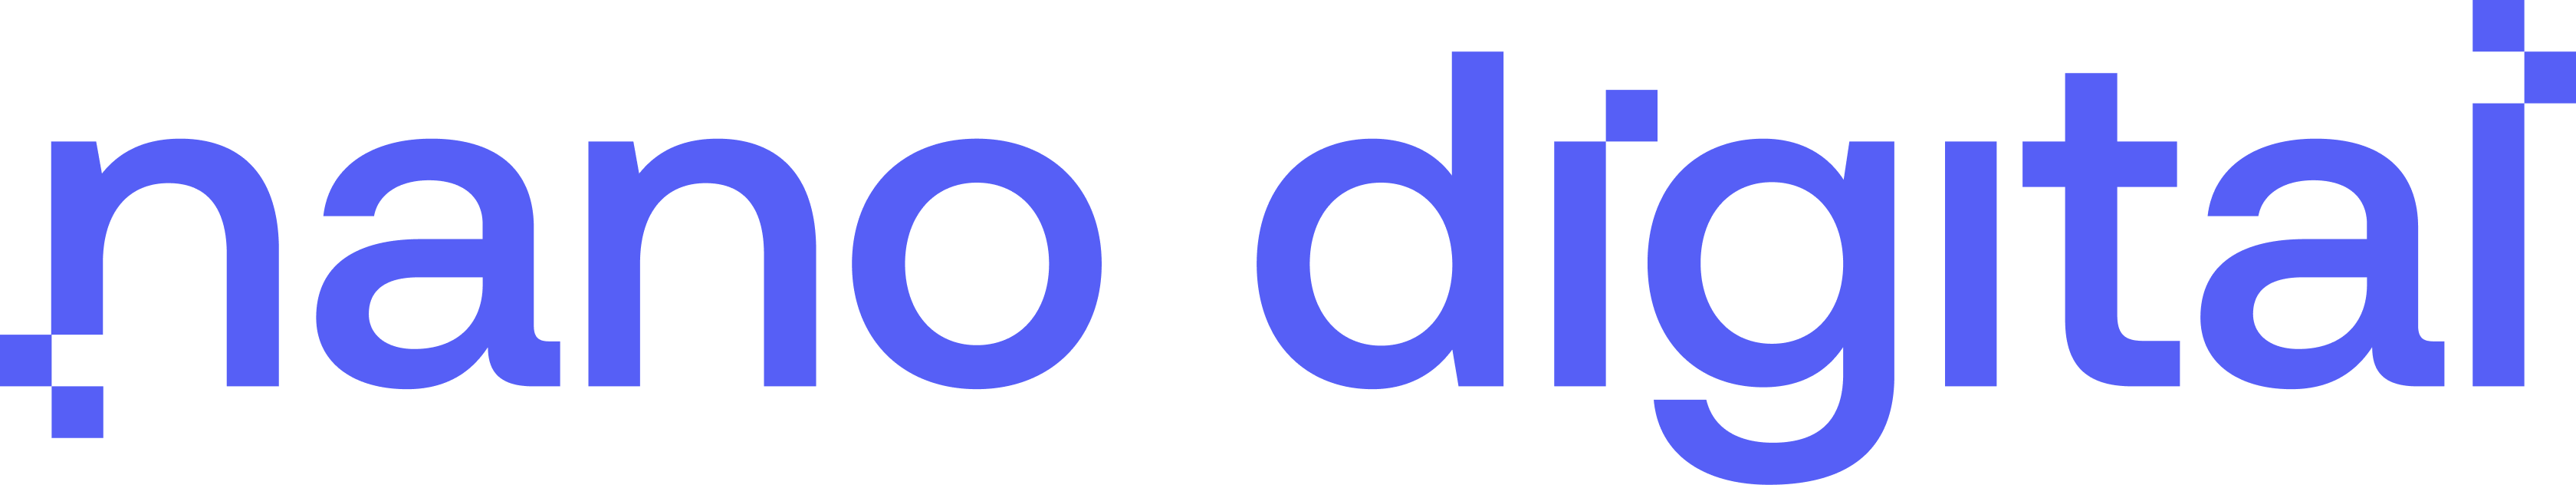 nano digital logo horizontal main